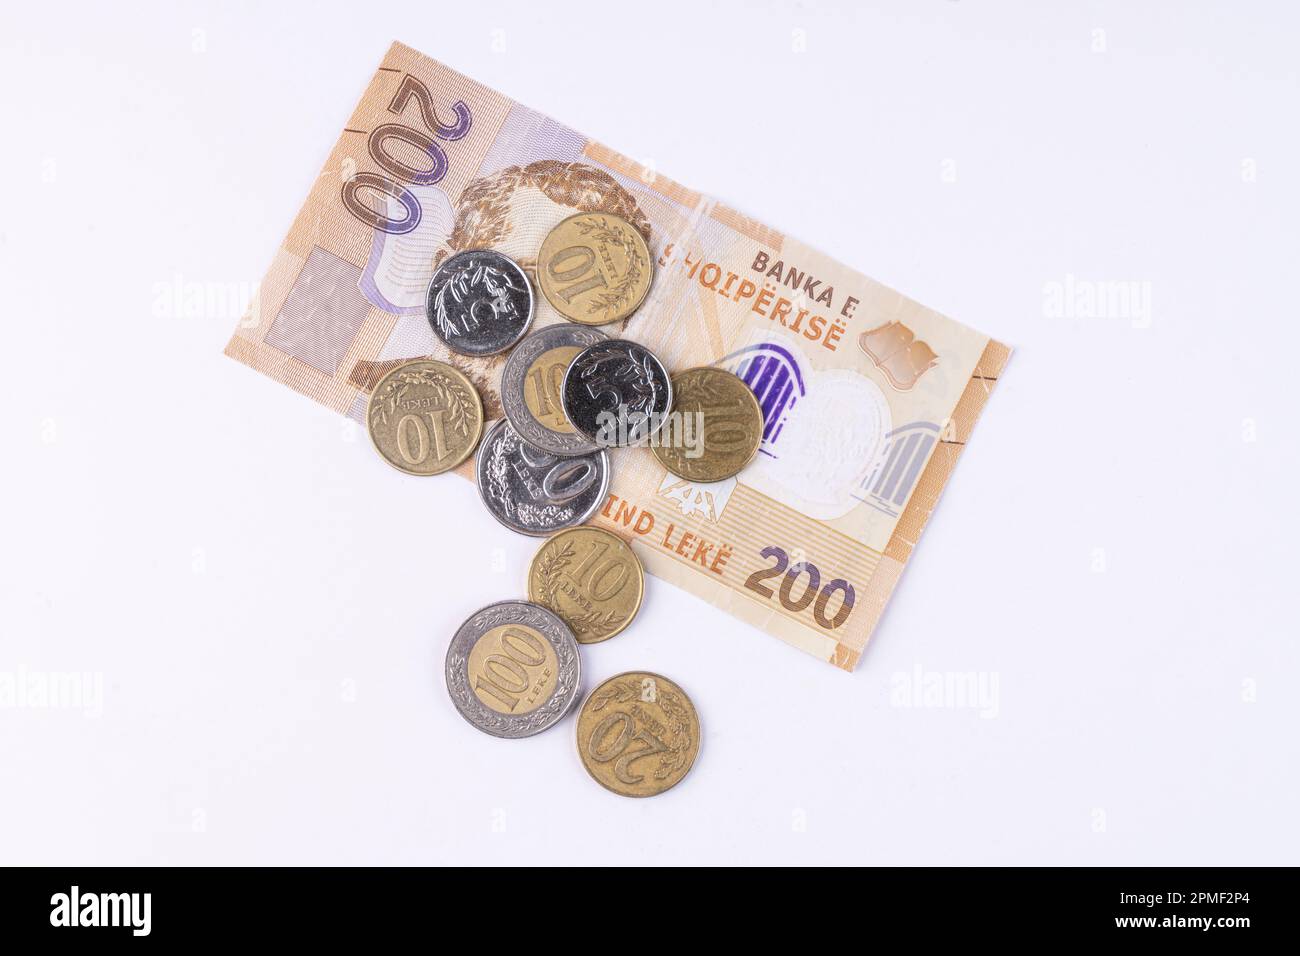 Einige Münzen und eine Lek-Banknote albanischer Währung auf einer weißen Oberfläche Stockfoto